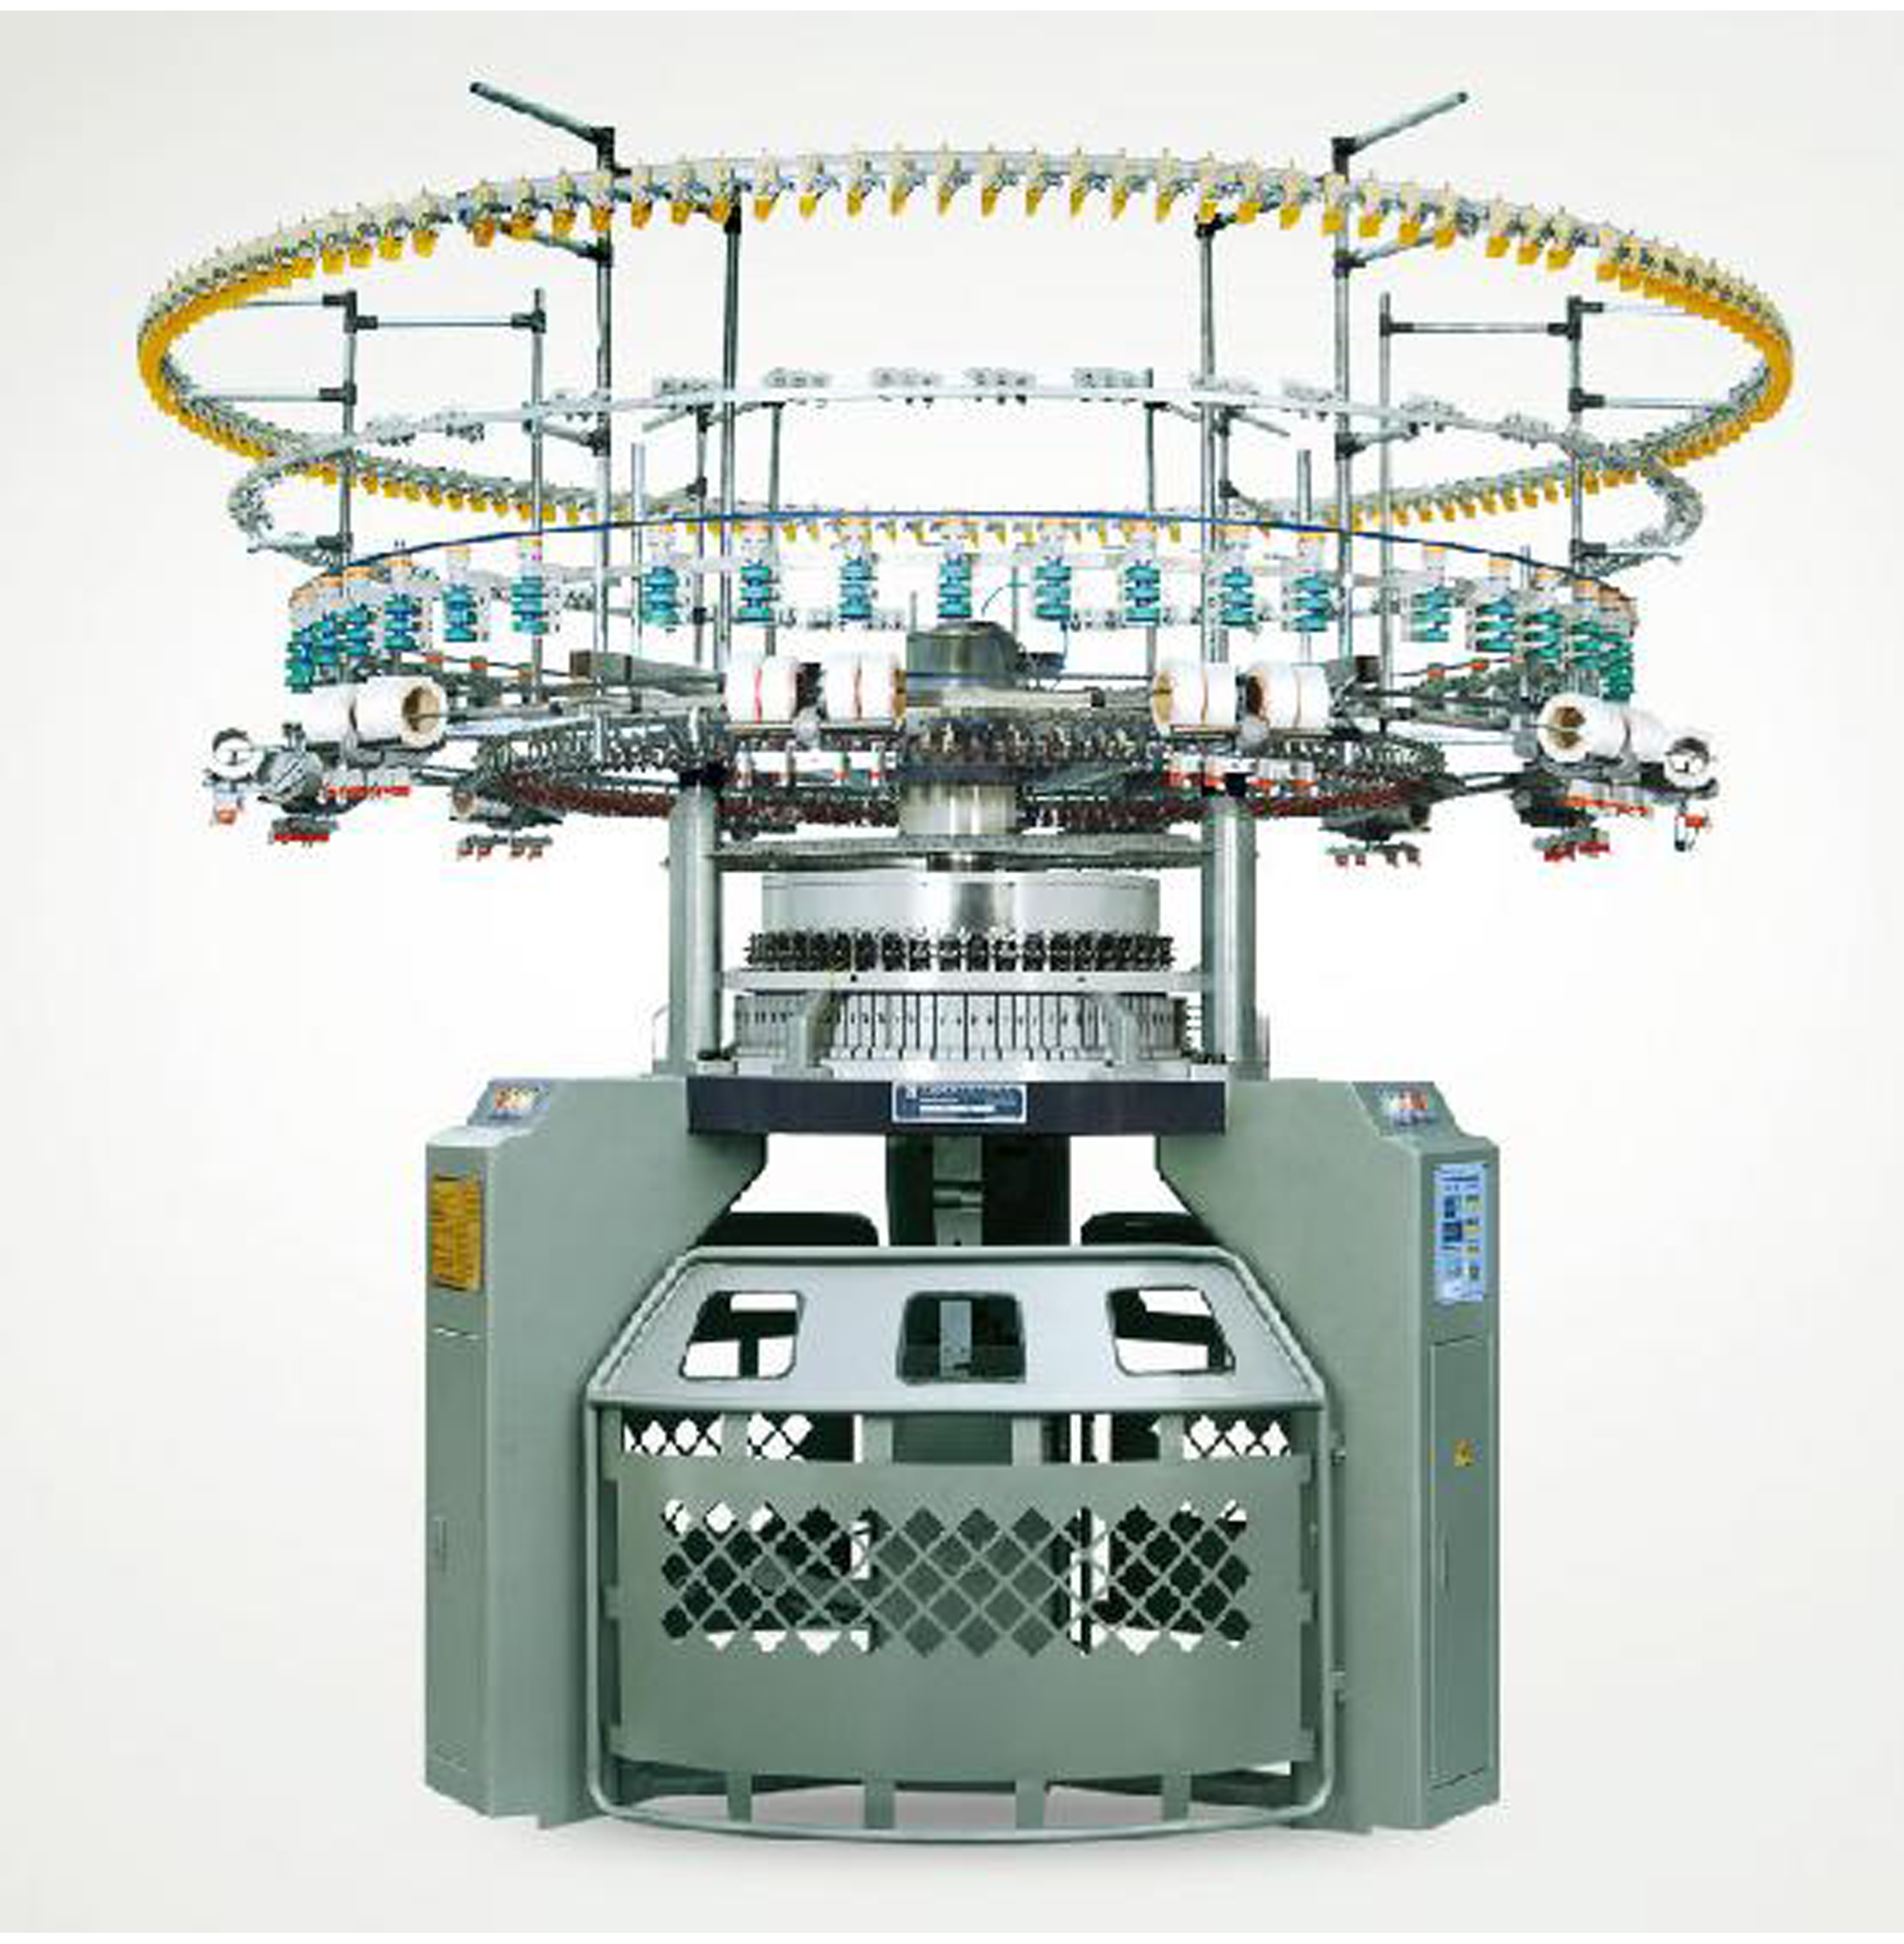 ماشین بافندگی رلتکس رینگل فول الکترونیک ژاکارد